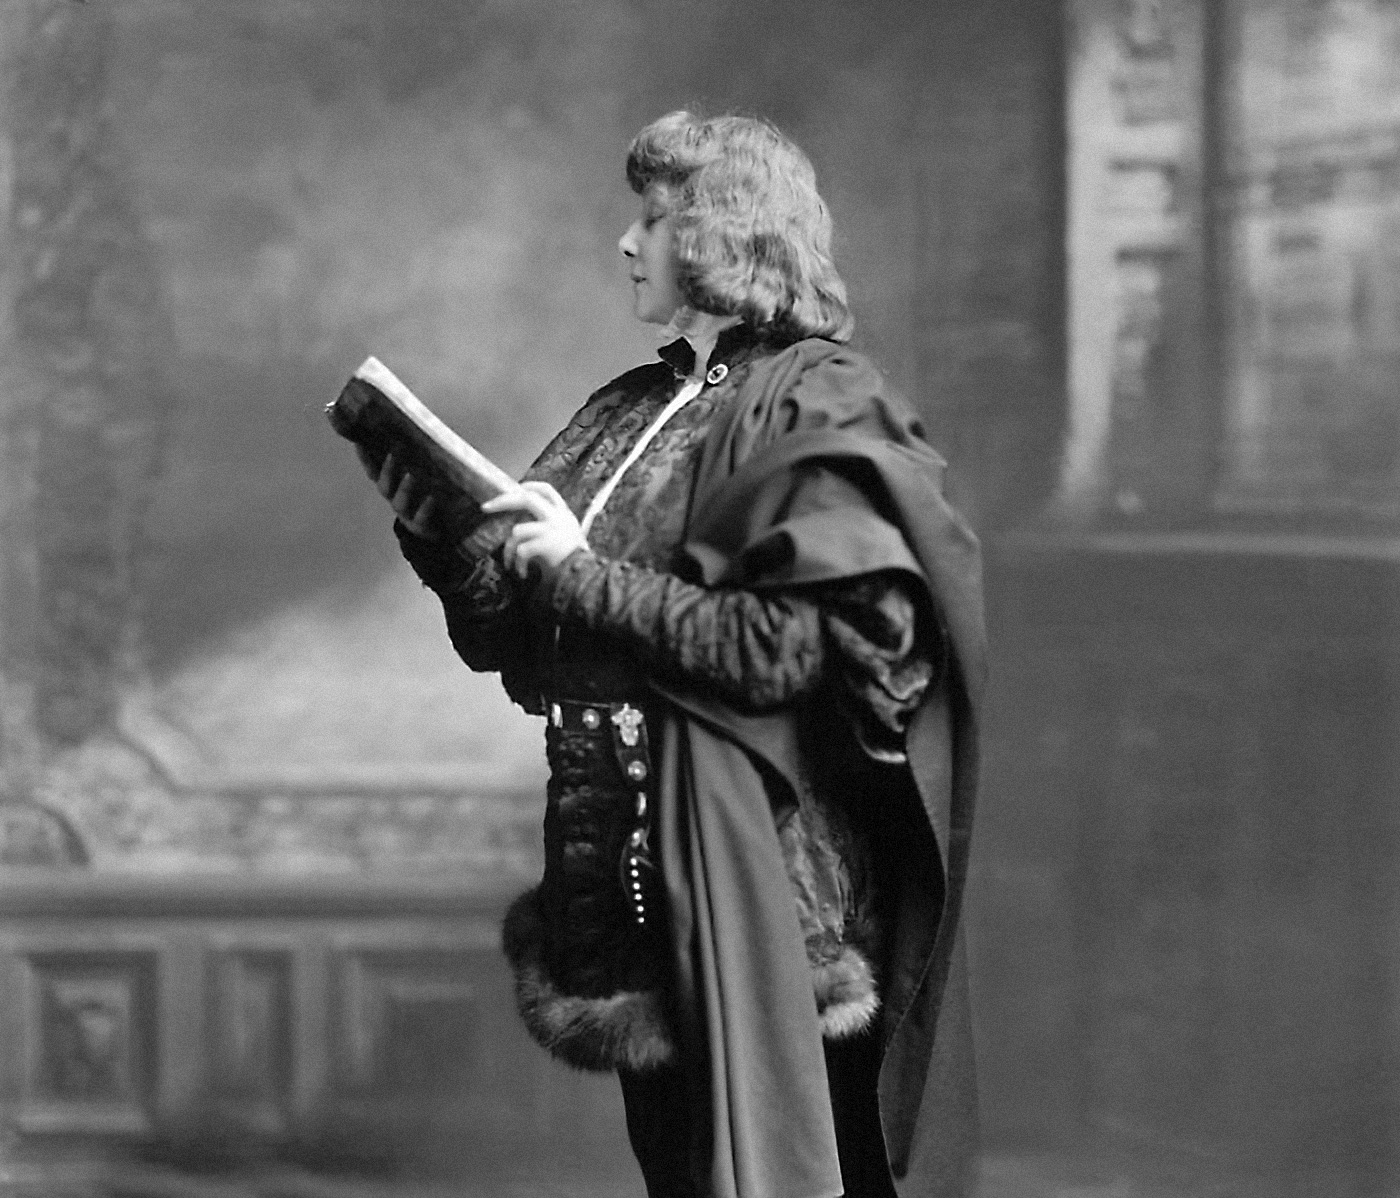 Французская актриса Сара Бернар в образе Гамлета, фото со съемок фильма «Гамлет», реж. Клеман Морис, 1900. Источник: imdb.com